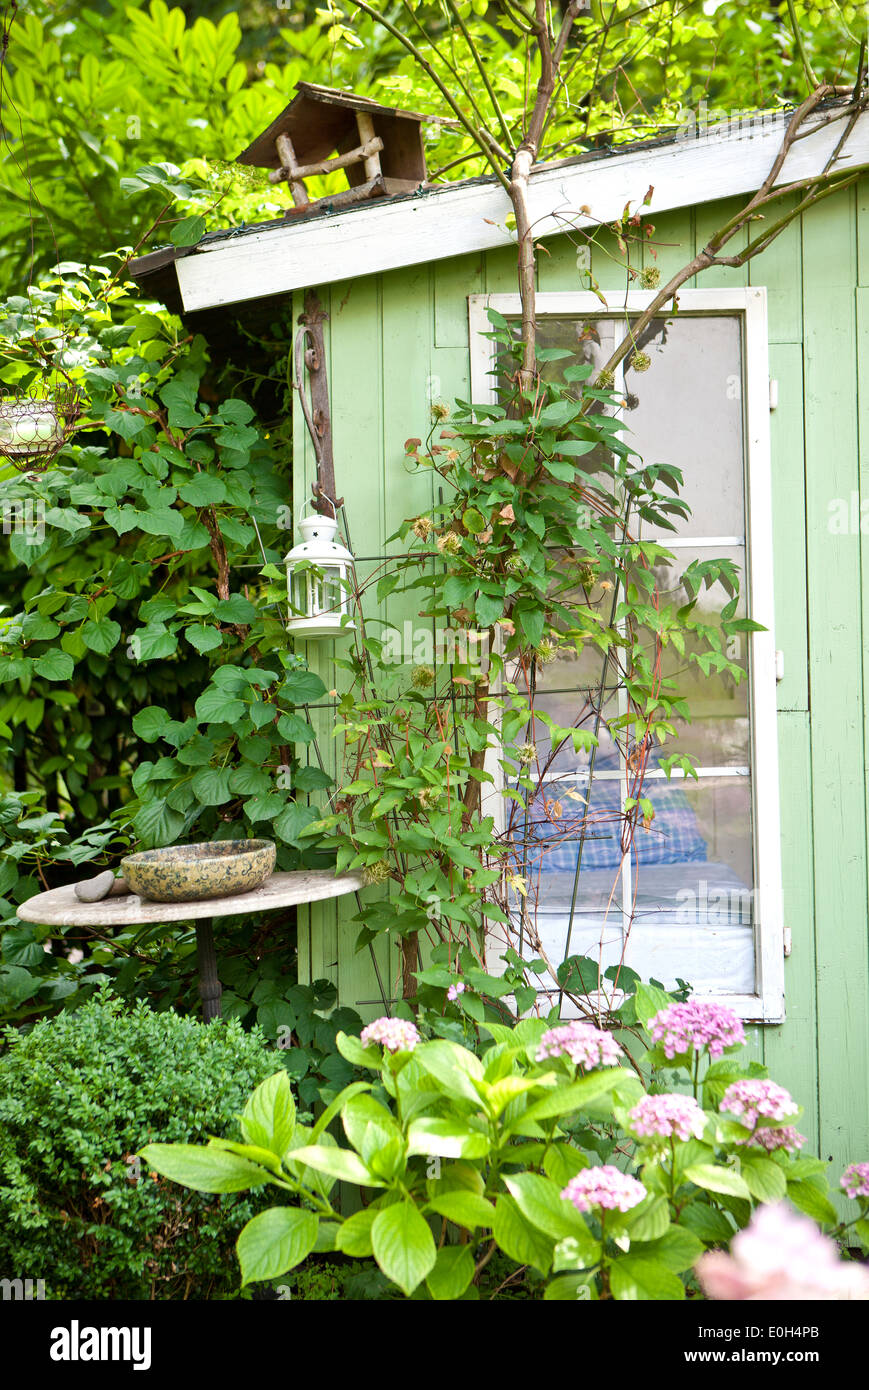 Sommerhaus mit Vogelhaus und Pflanzen vor dem Fenster, Wien, Österreich  Stockfotografie - Alamy